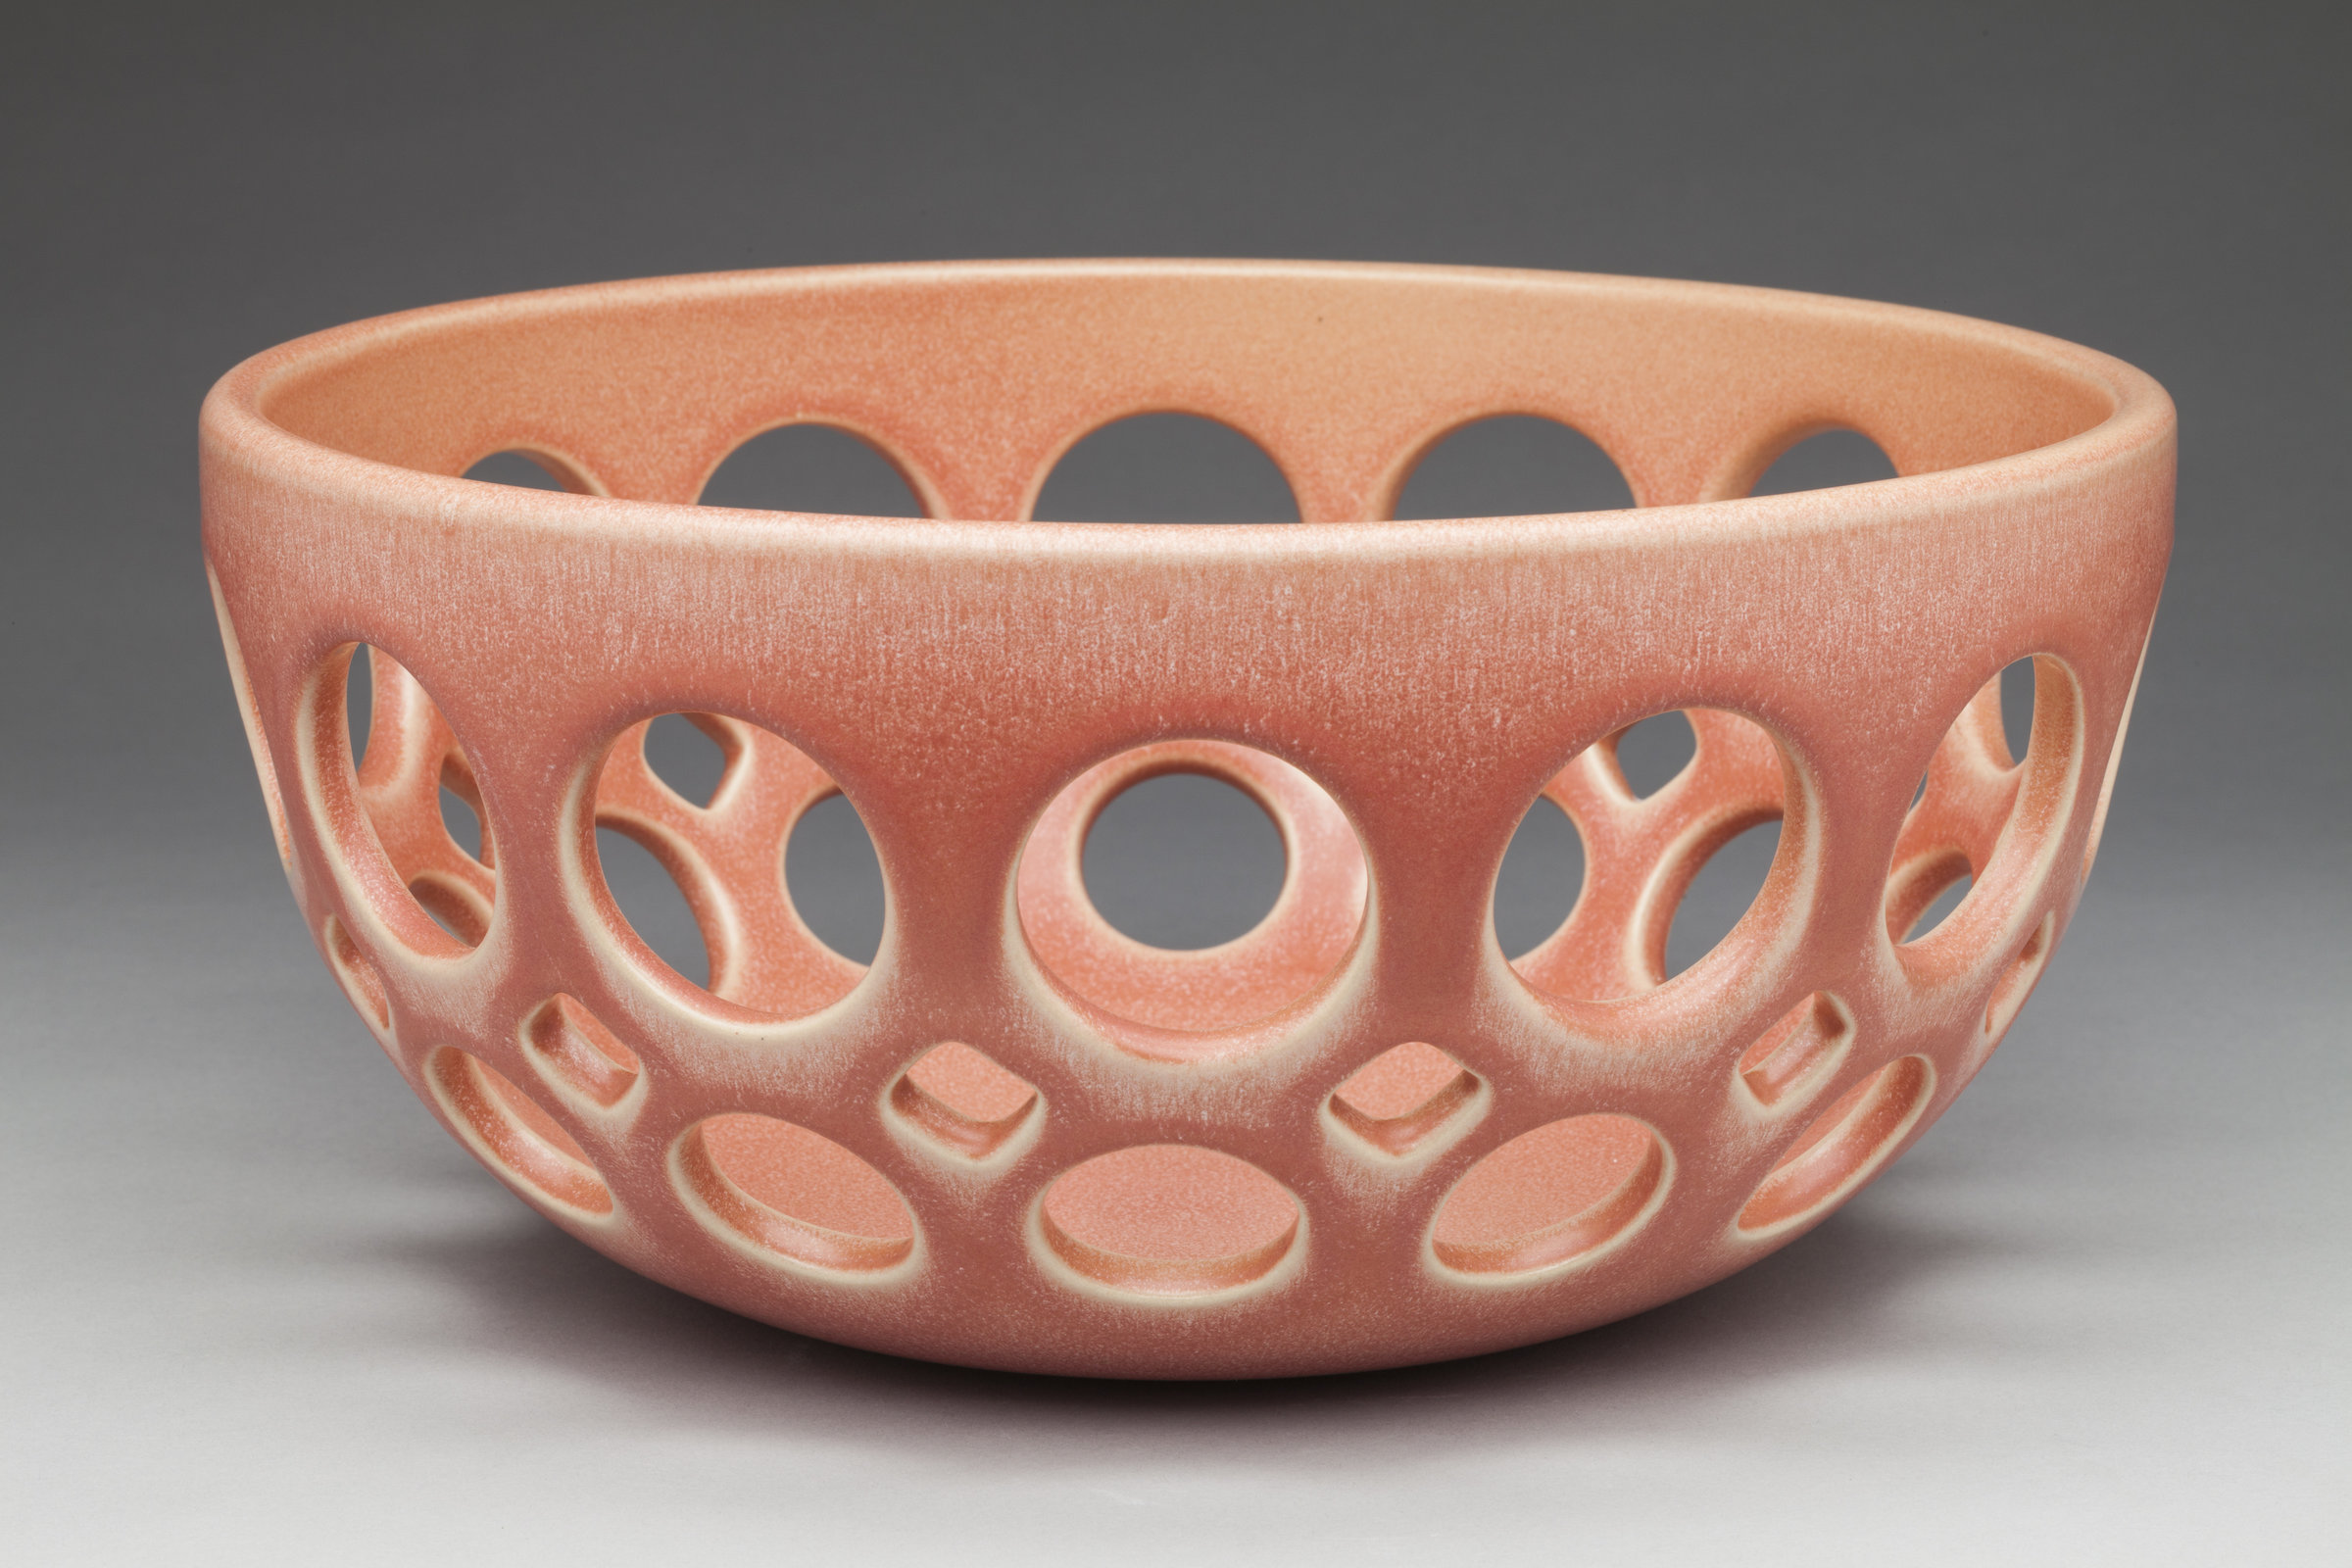 Rhubarb Pierced Fruit Bowl by Lynne Meade (Ceramic Bowl) | Artful Home